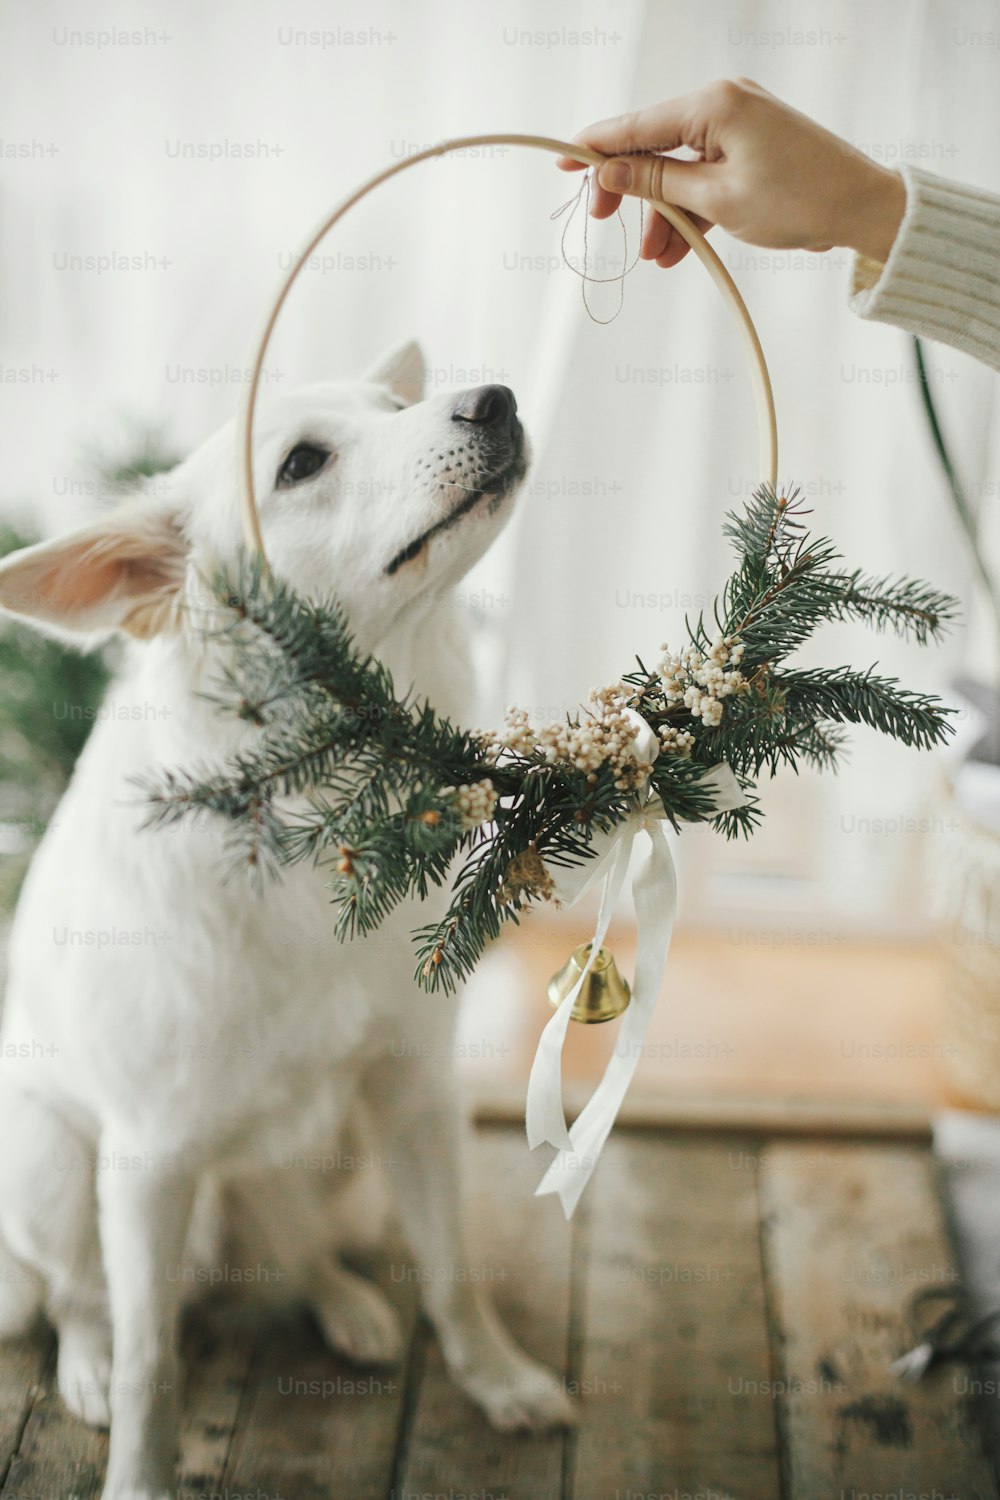 Frau Hand legt modernen Weihnachtskranz auf entzückenden weißen Hund. Süßer weißer Schweizer Schäferhund mit lustigen Emotionen in stilvollem Weihnachtskranz im modernen skandinavischen Raum. Frohe Weihnachten!